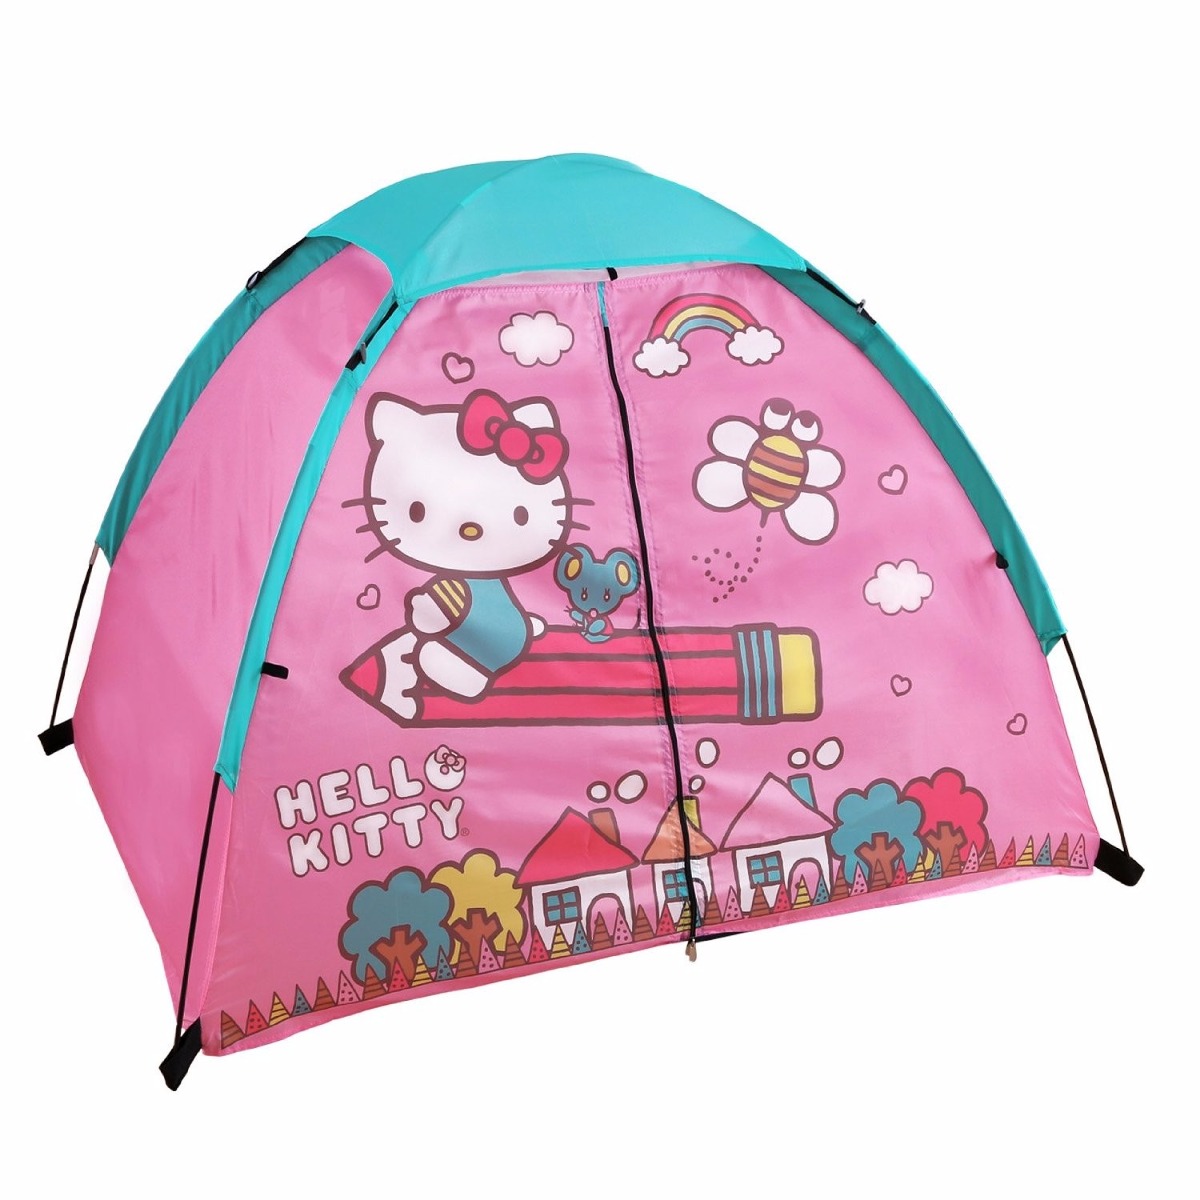 Casa De Campaña Hello Kitty - $ 1,200.00 en Mercado Libre